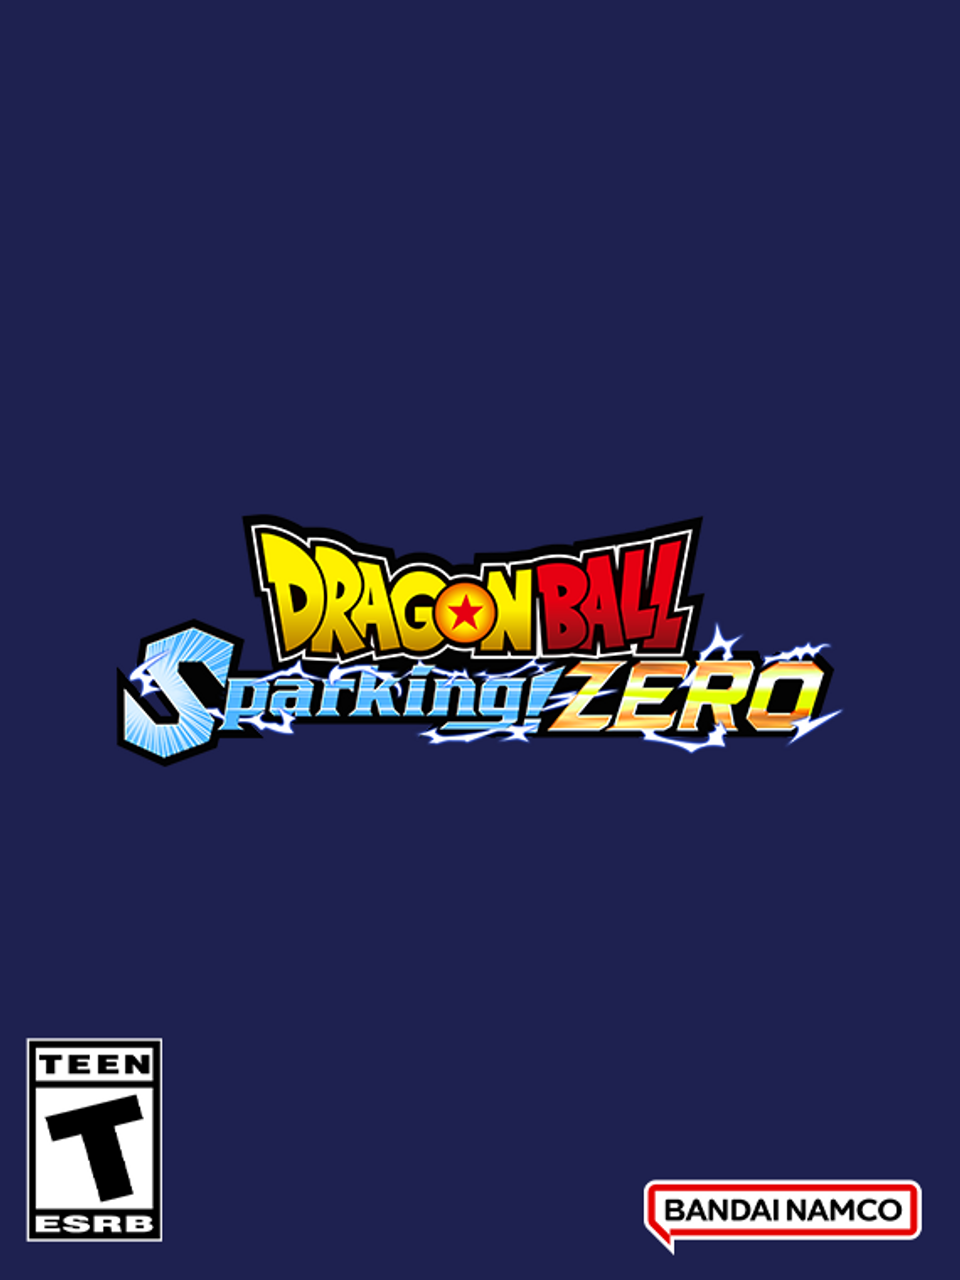 DRAGON BALL: Sparking! ZERO on Steam